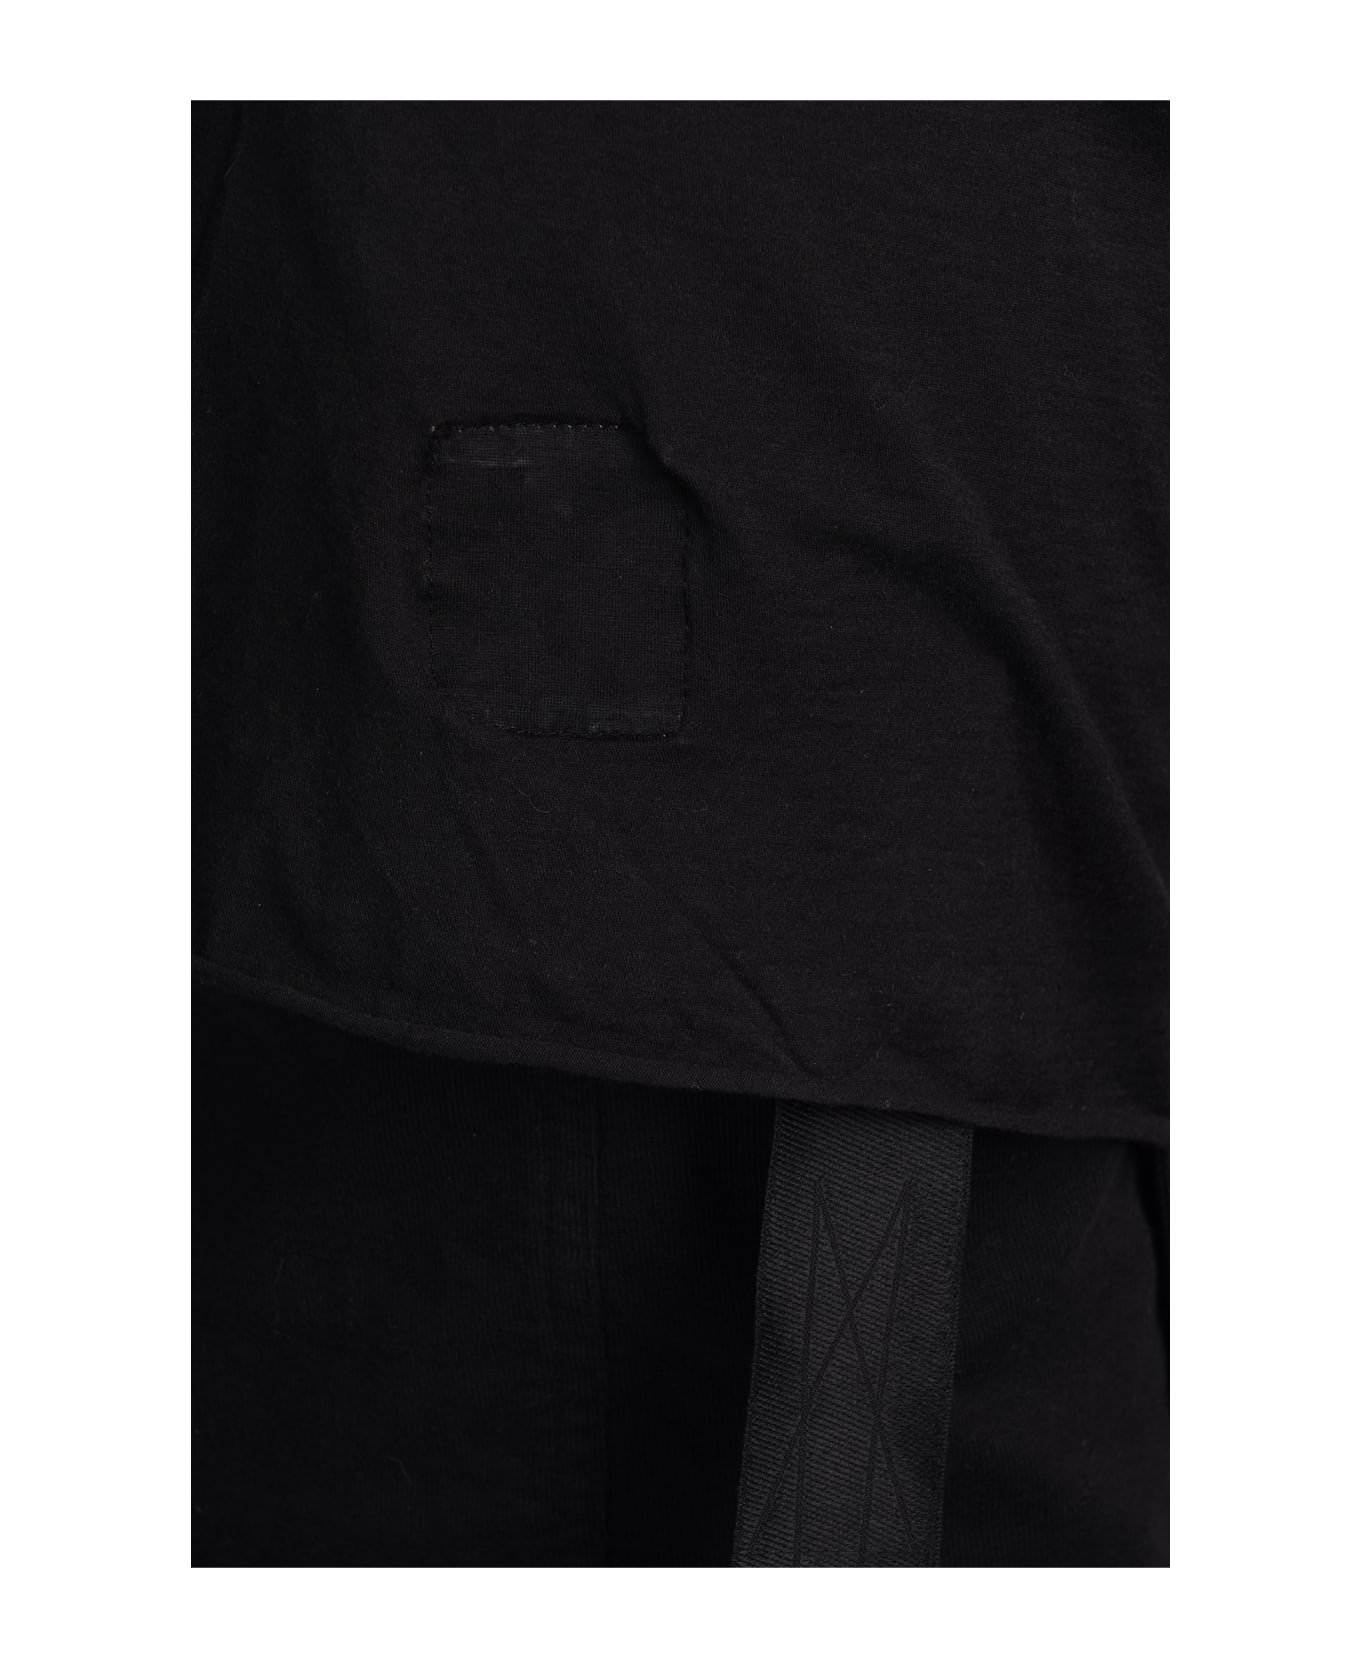 DRKSHDW Halter T Topwear In Black Cotton - black